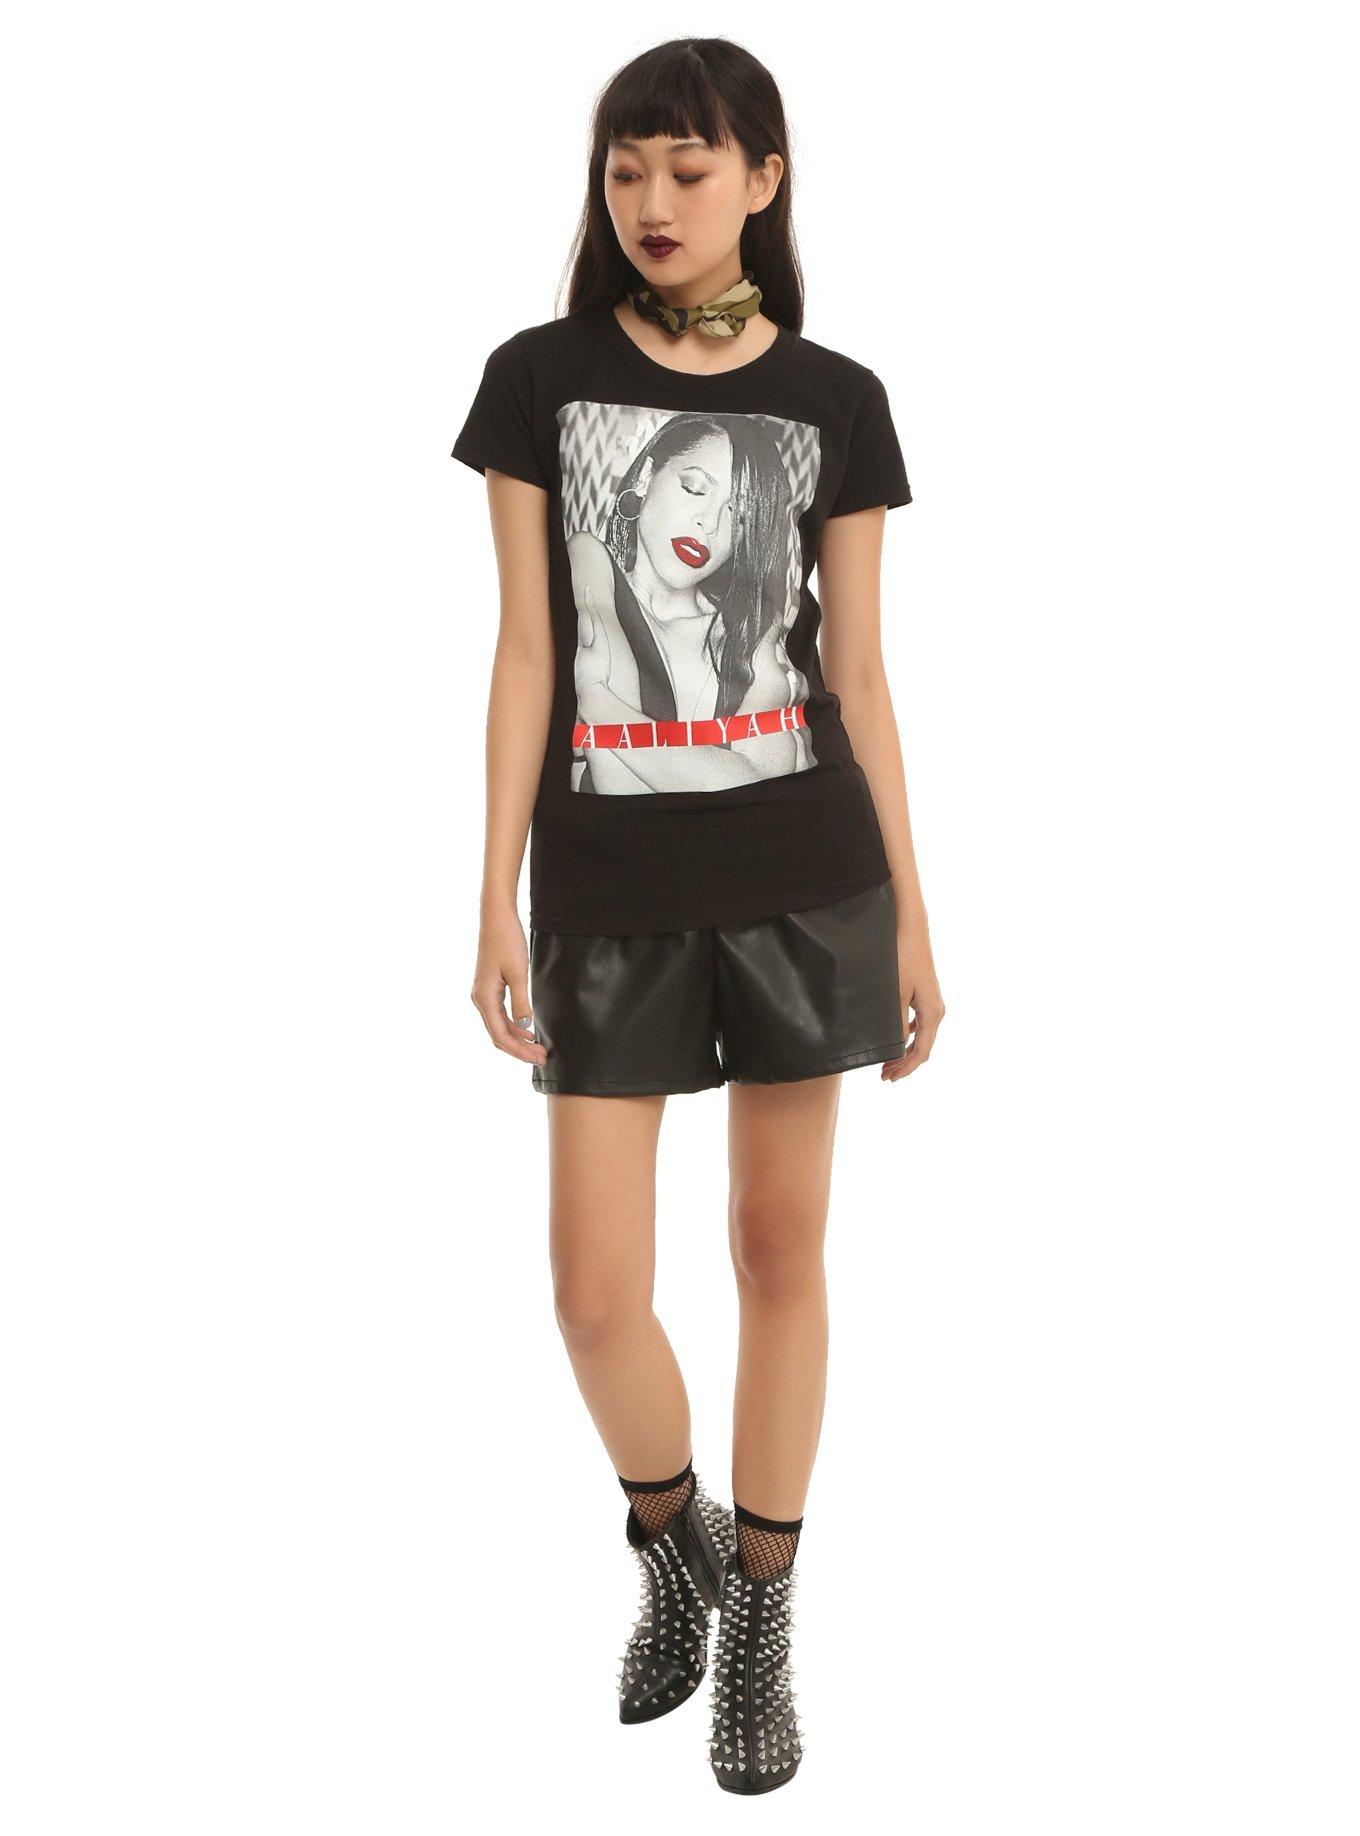 Aaliyah Black & White Logo Girls T-Shirt, , alternate